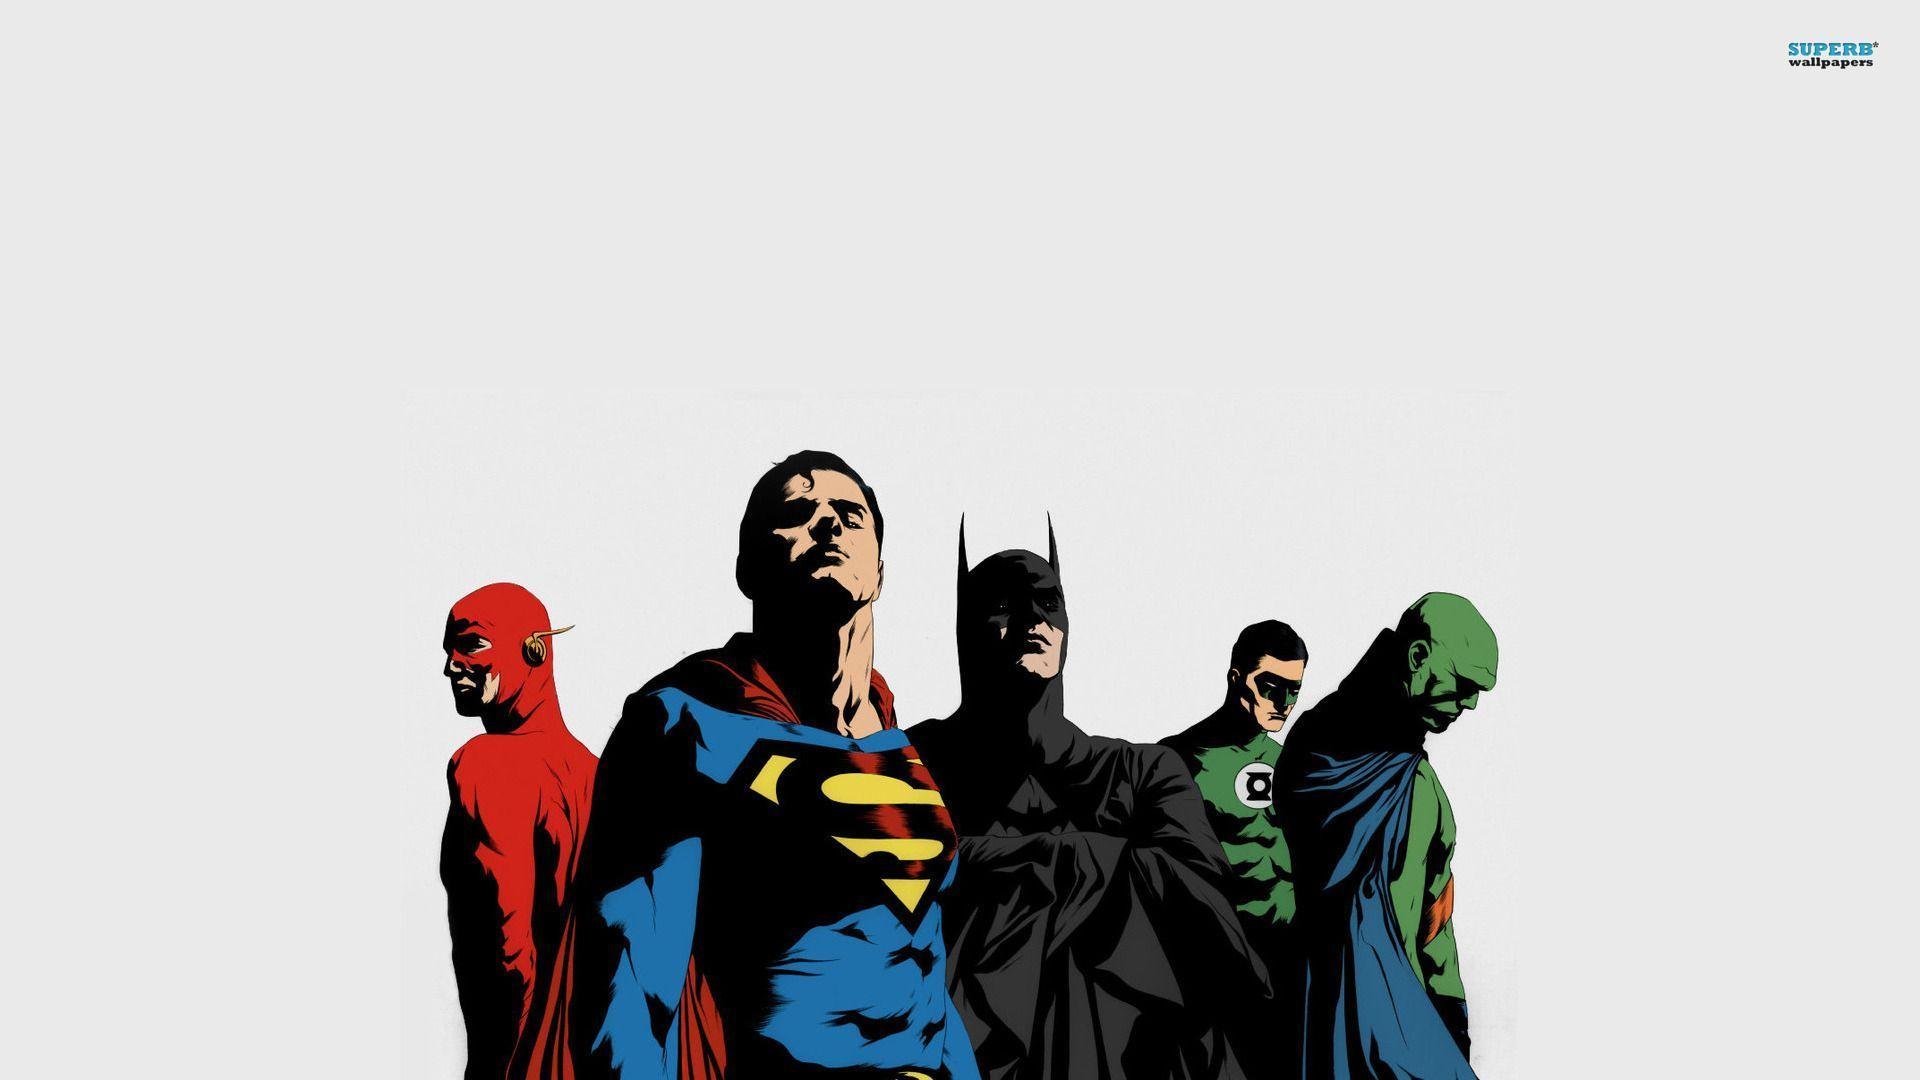 Justice League wallpaper wallpaper - #